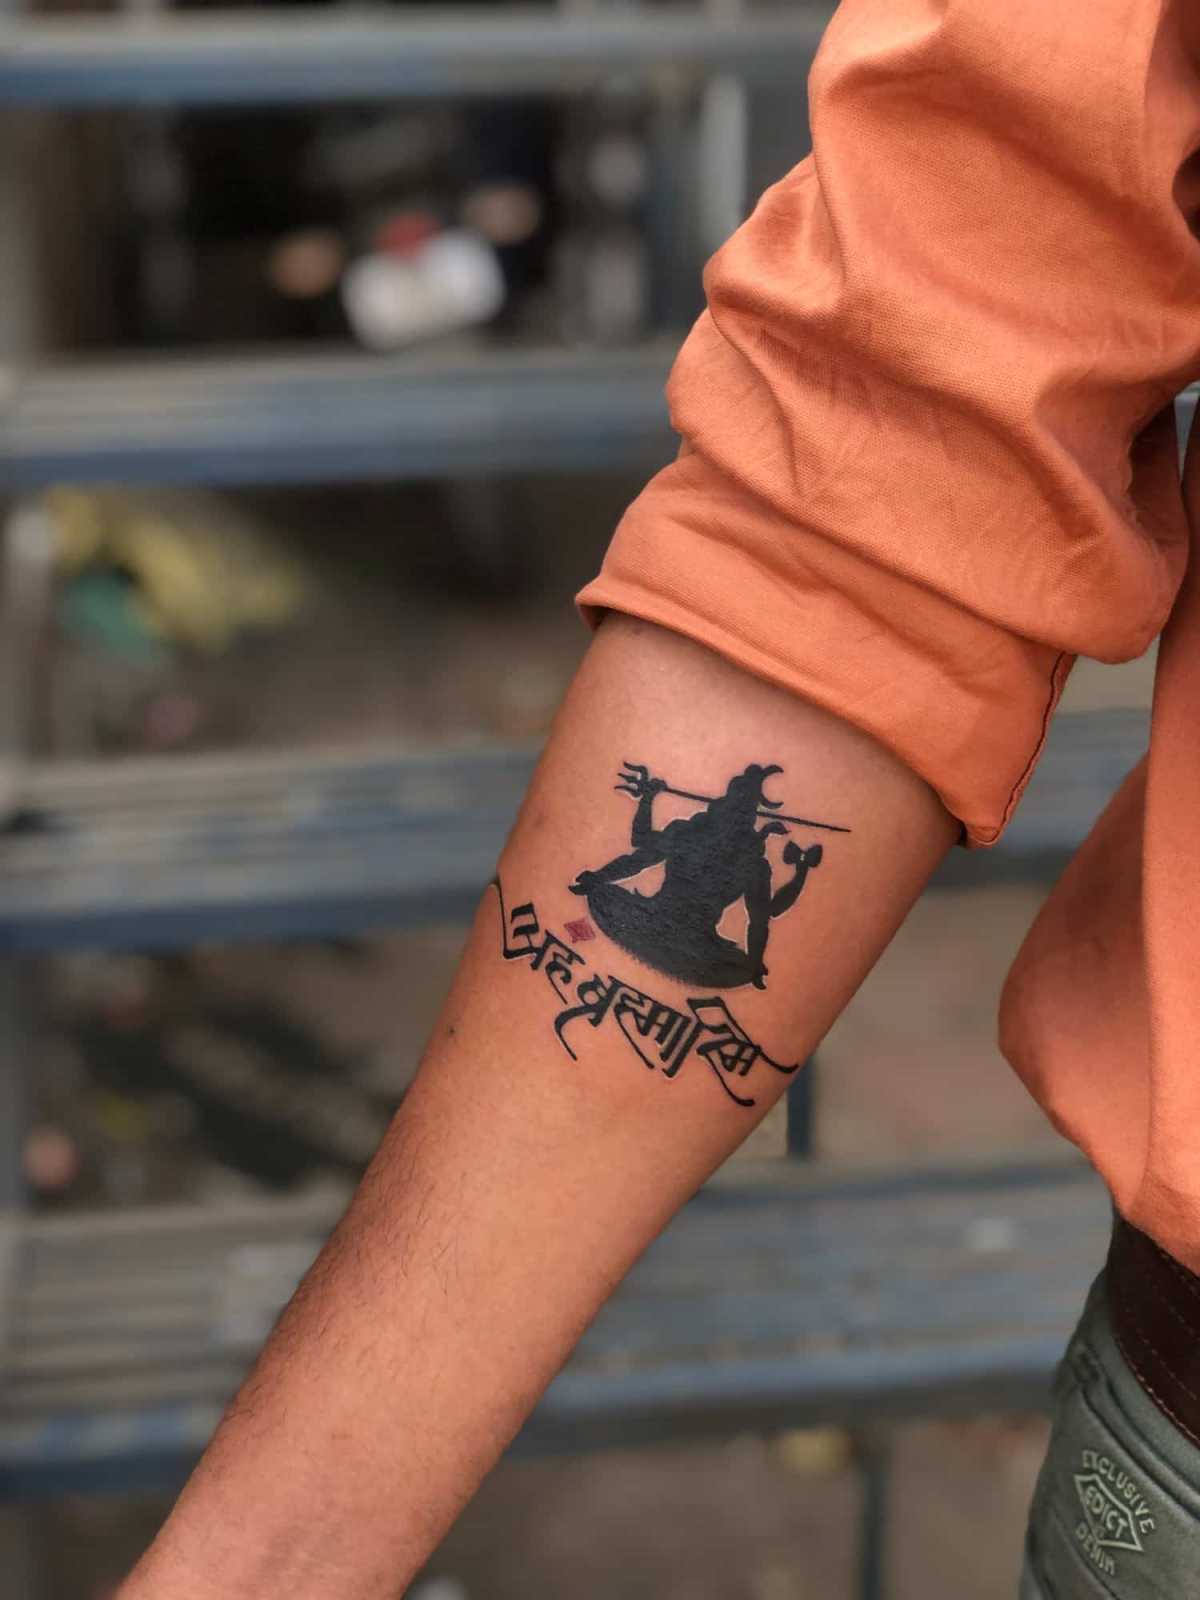 The Third Eye Tattoos in Ayodhya Nagar,Bhopal - Best Tattoo